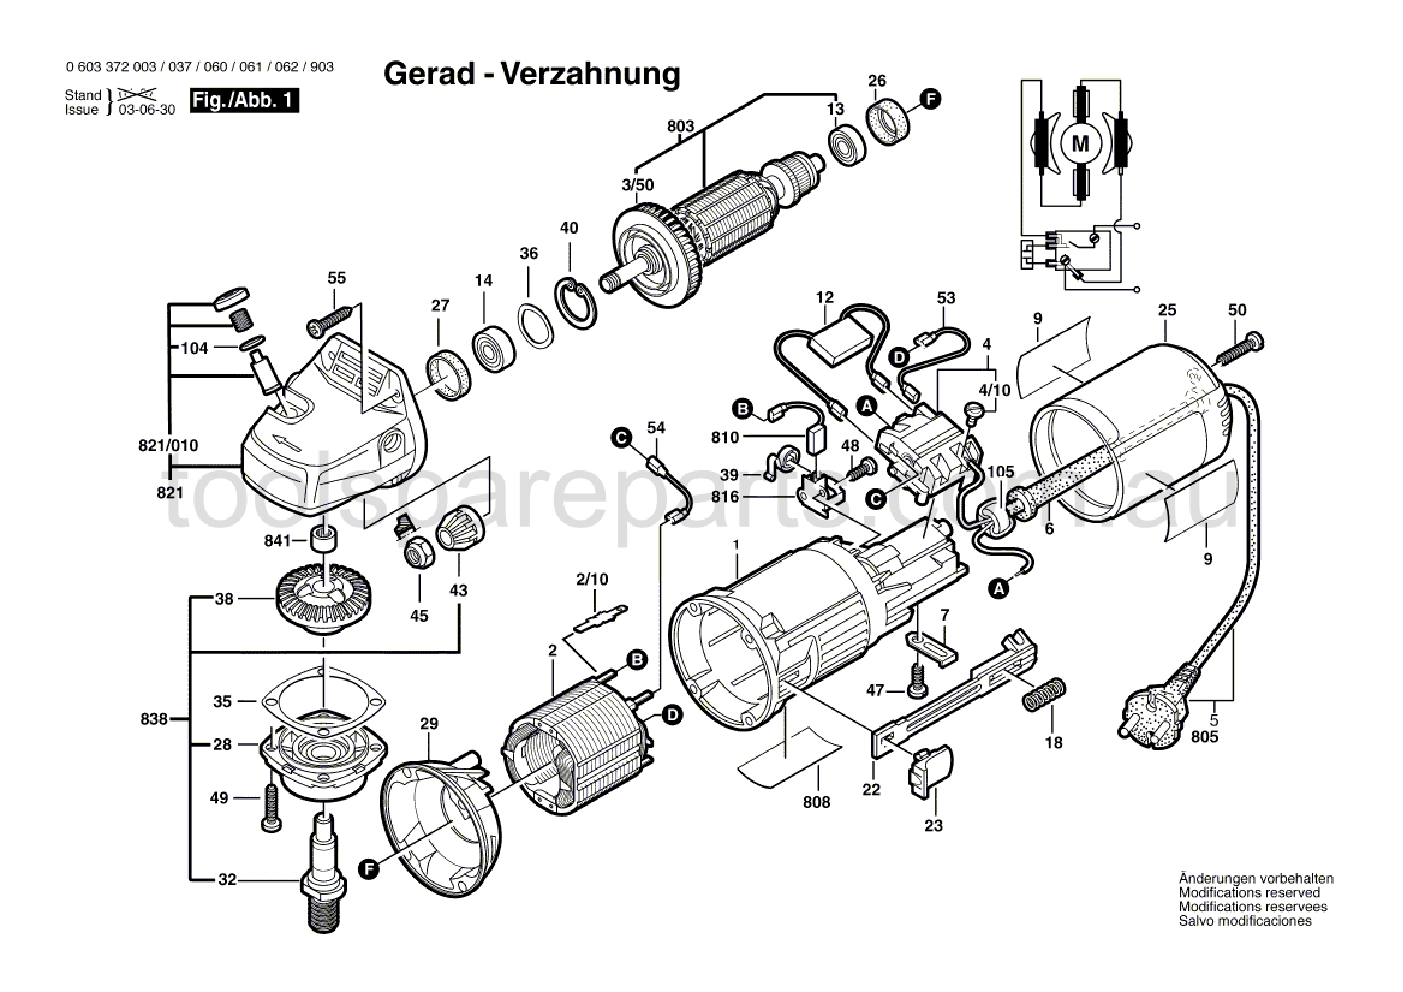 Bosch PWS 6-100 0603372037  Diagram 1